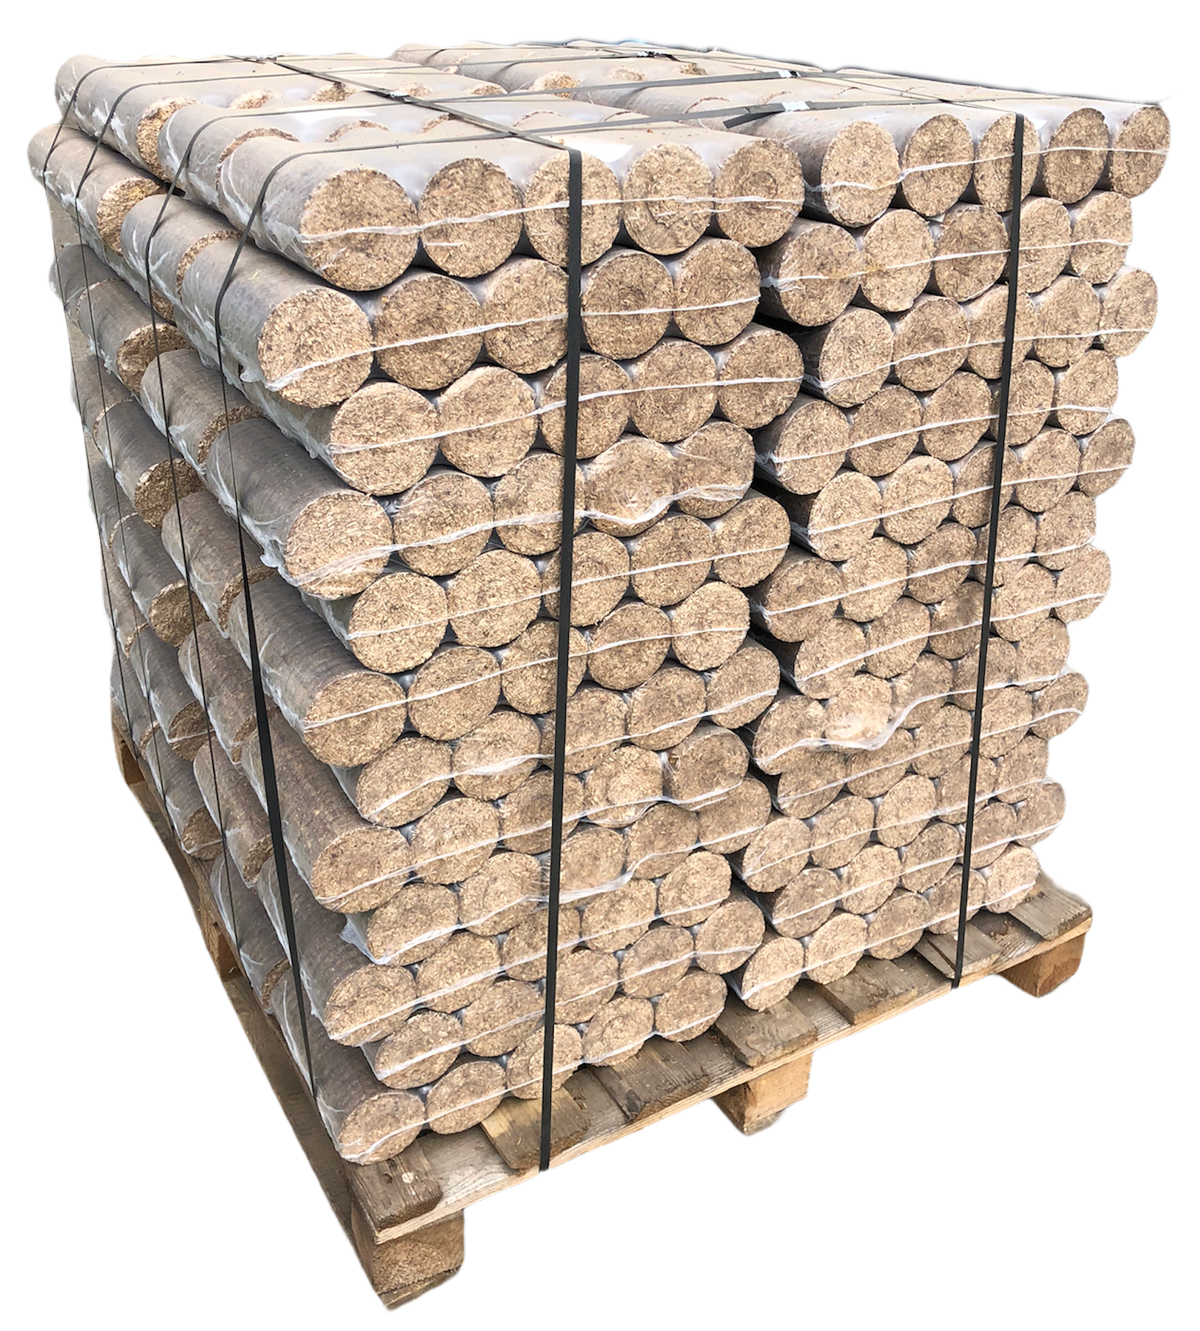 Dřevěné brikety VÁLEC MIX - 800 kg